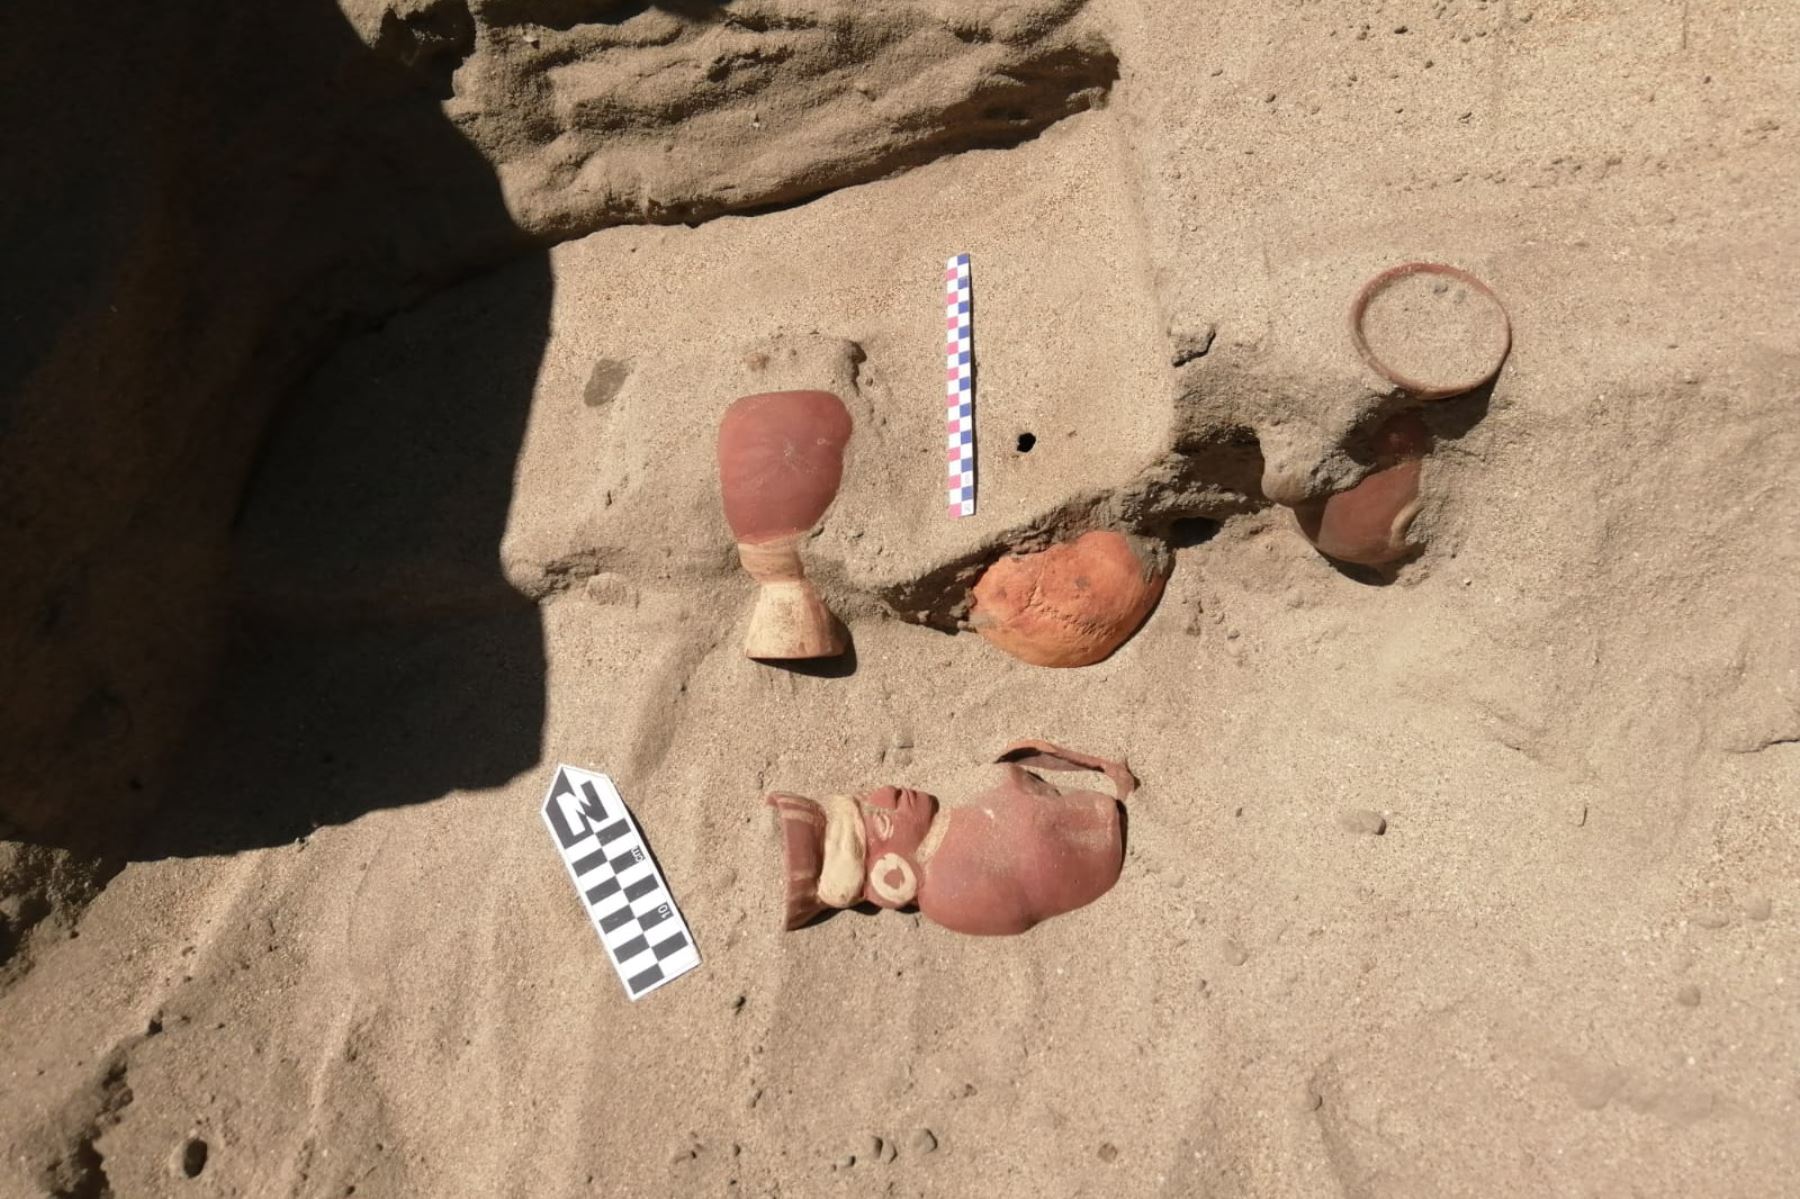 Hallan entierro prehispánico y piezas de cerámica de la cultura Moche en calle de pueblo joven de Chimbote. Foto: Cortesía/Juan López Marchena